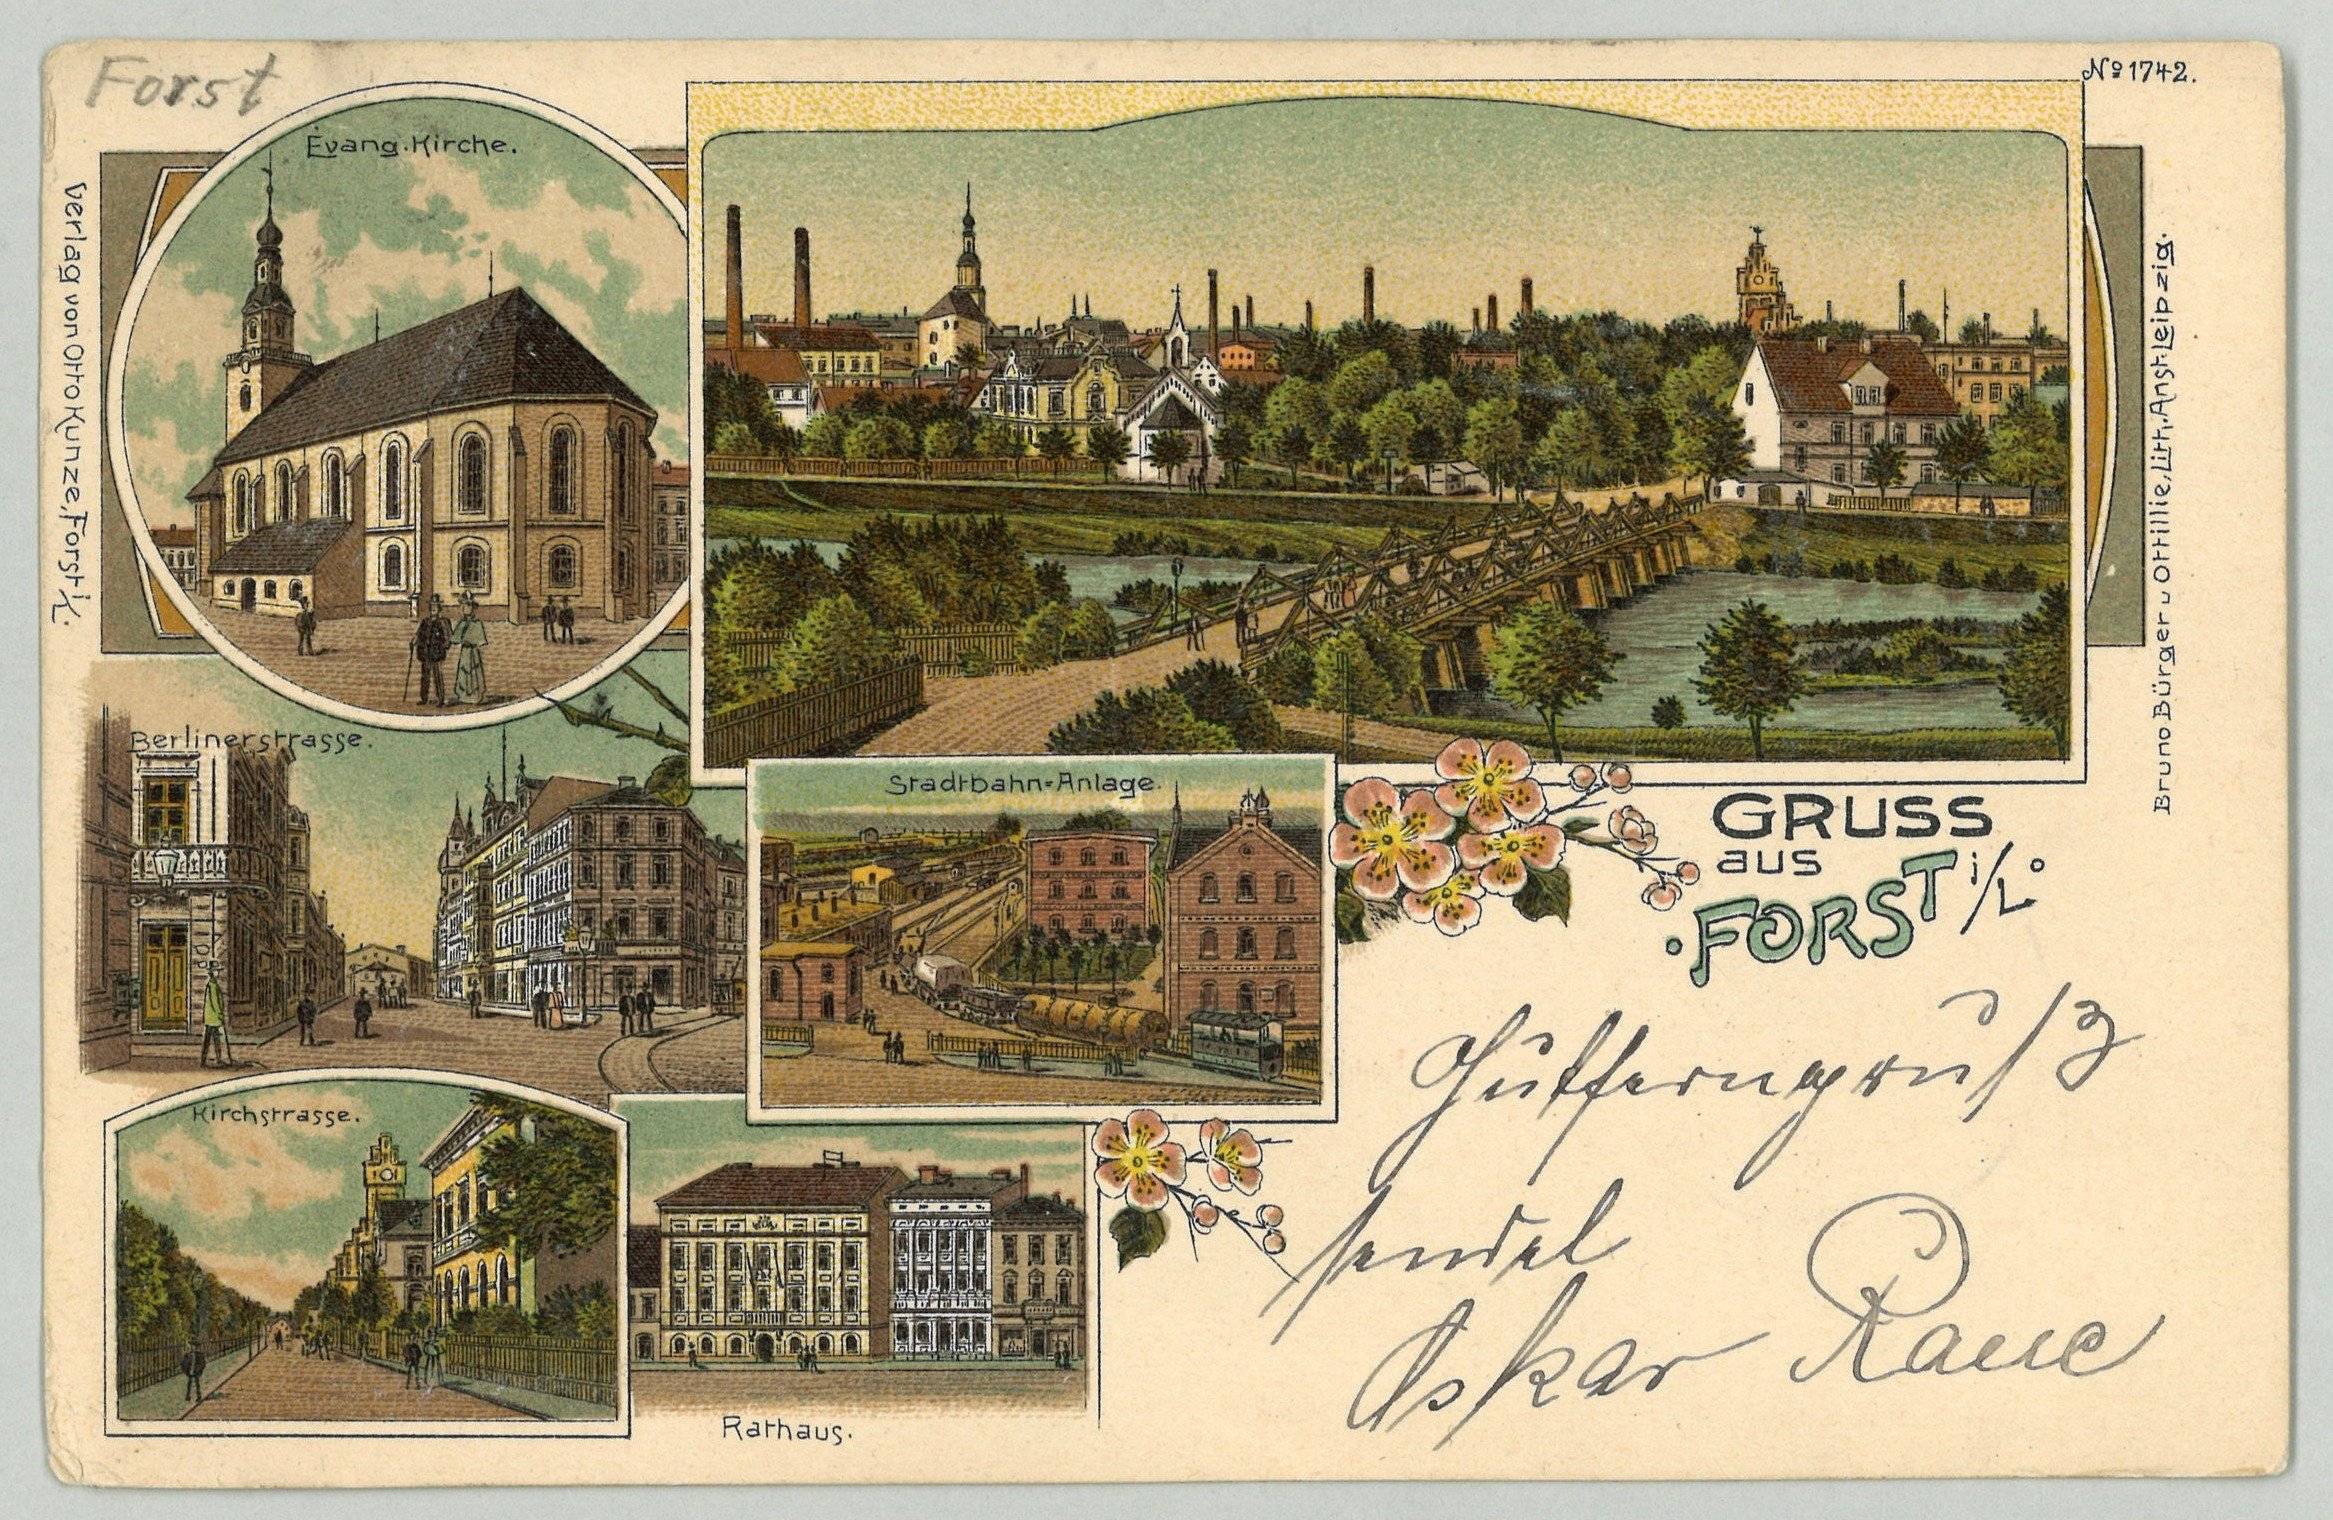 Forst (Lausitz): Sechs Ansichten (Landesgeschichtliche Vereinigung für die Mark Brandenburg e.V., Archiv CC BY)